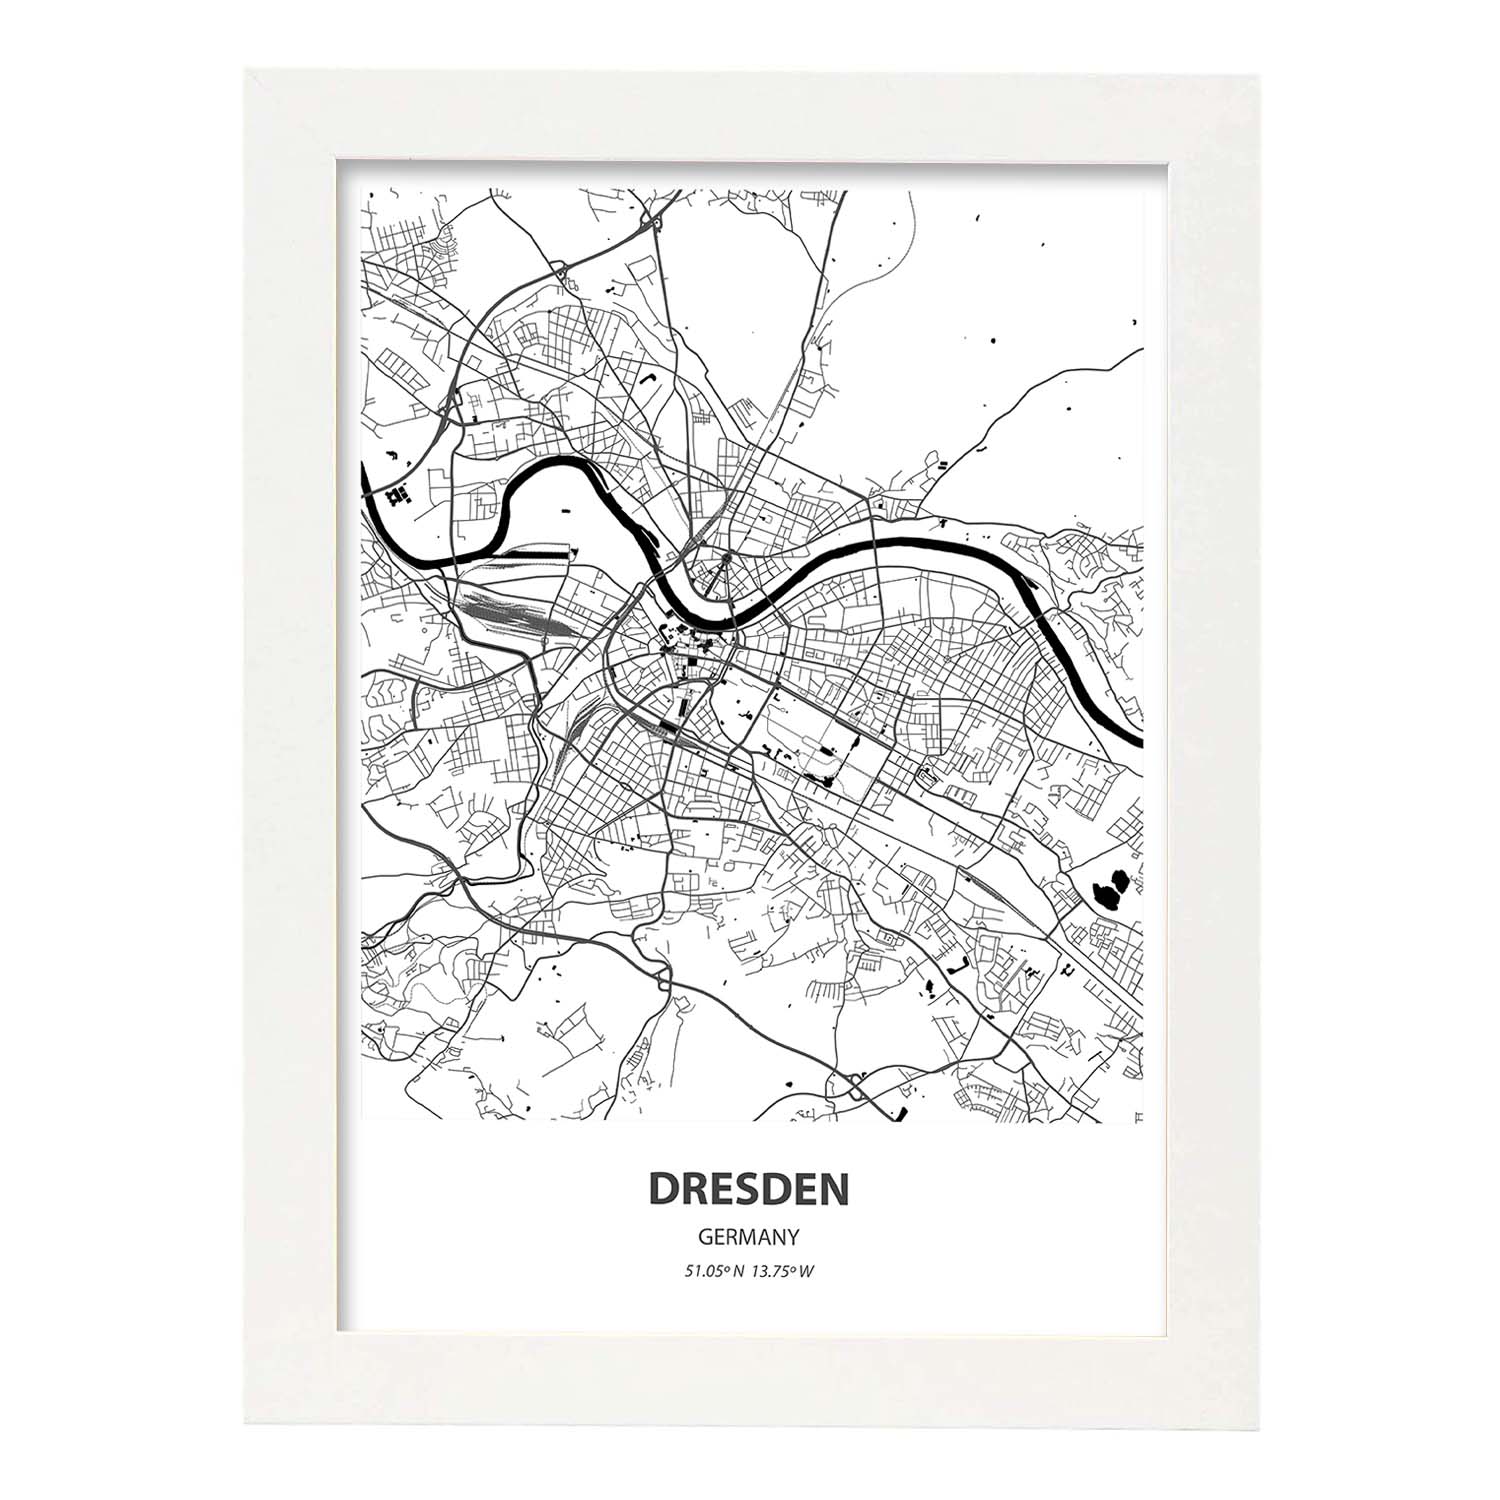 Poster con mapa de Dresden - Alemania. Láminas de ciudades de Alemania con mares y ríos en color negro.-Artwork-Nacnic-A4-Marco Blanco-Nacnic Estudio SL